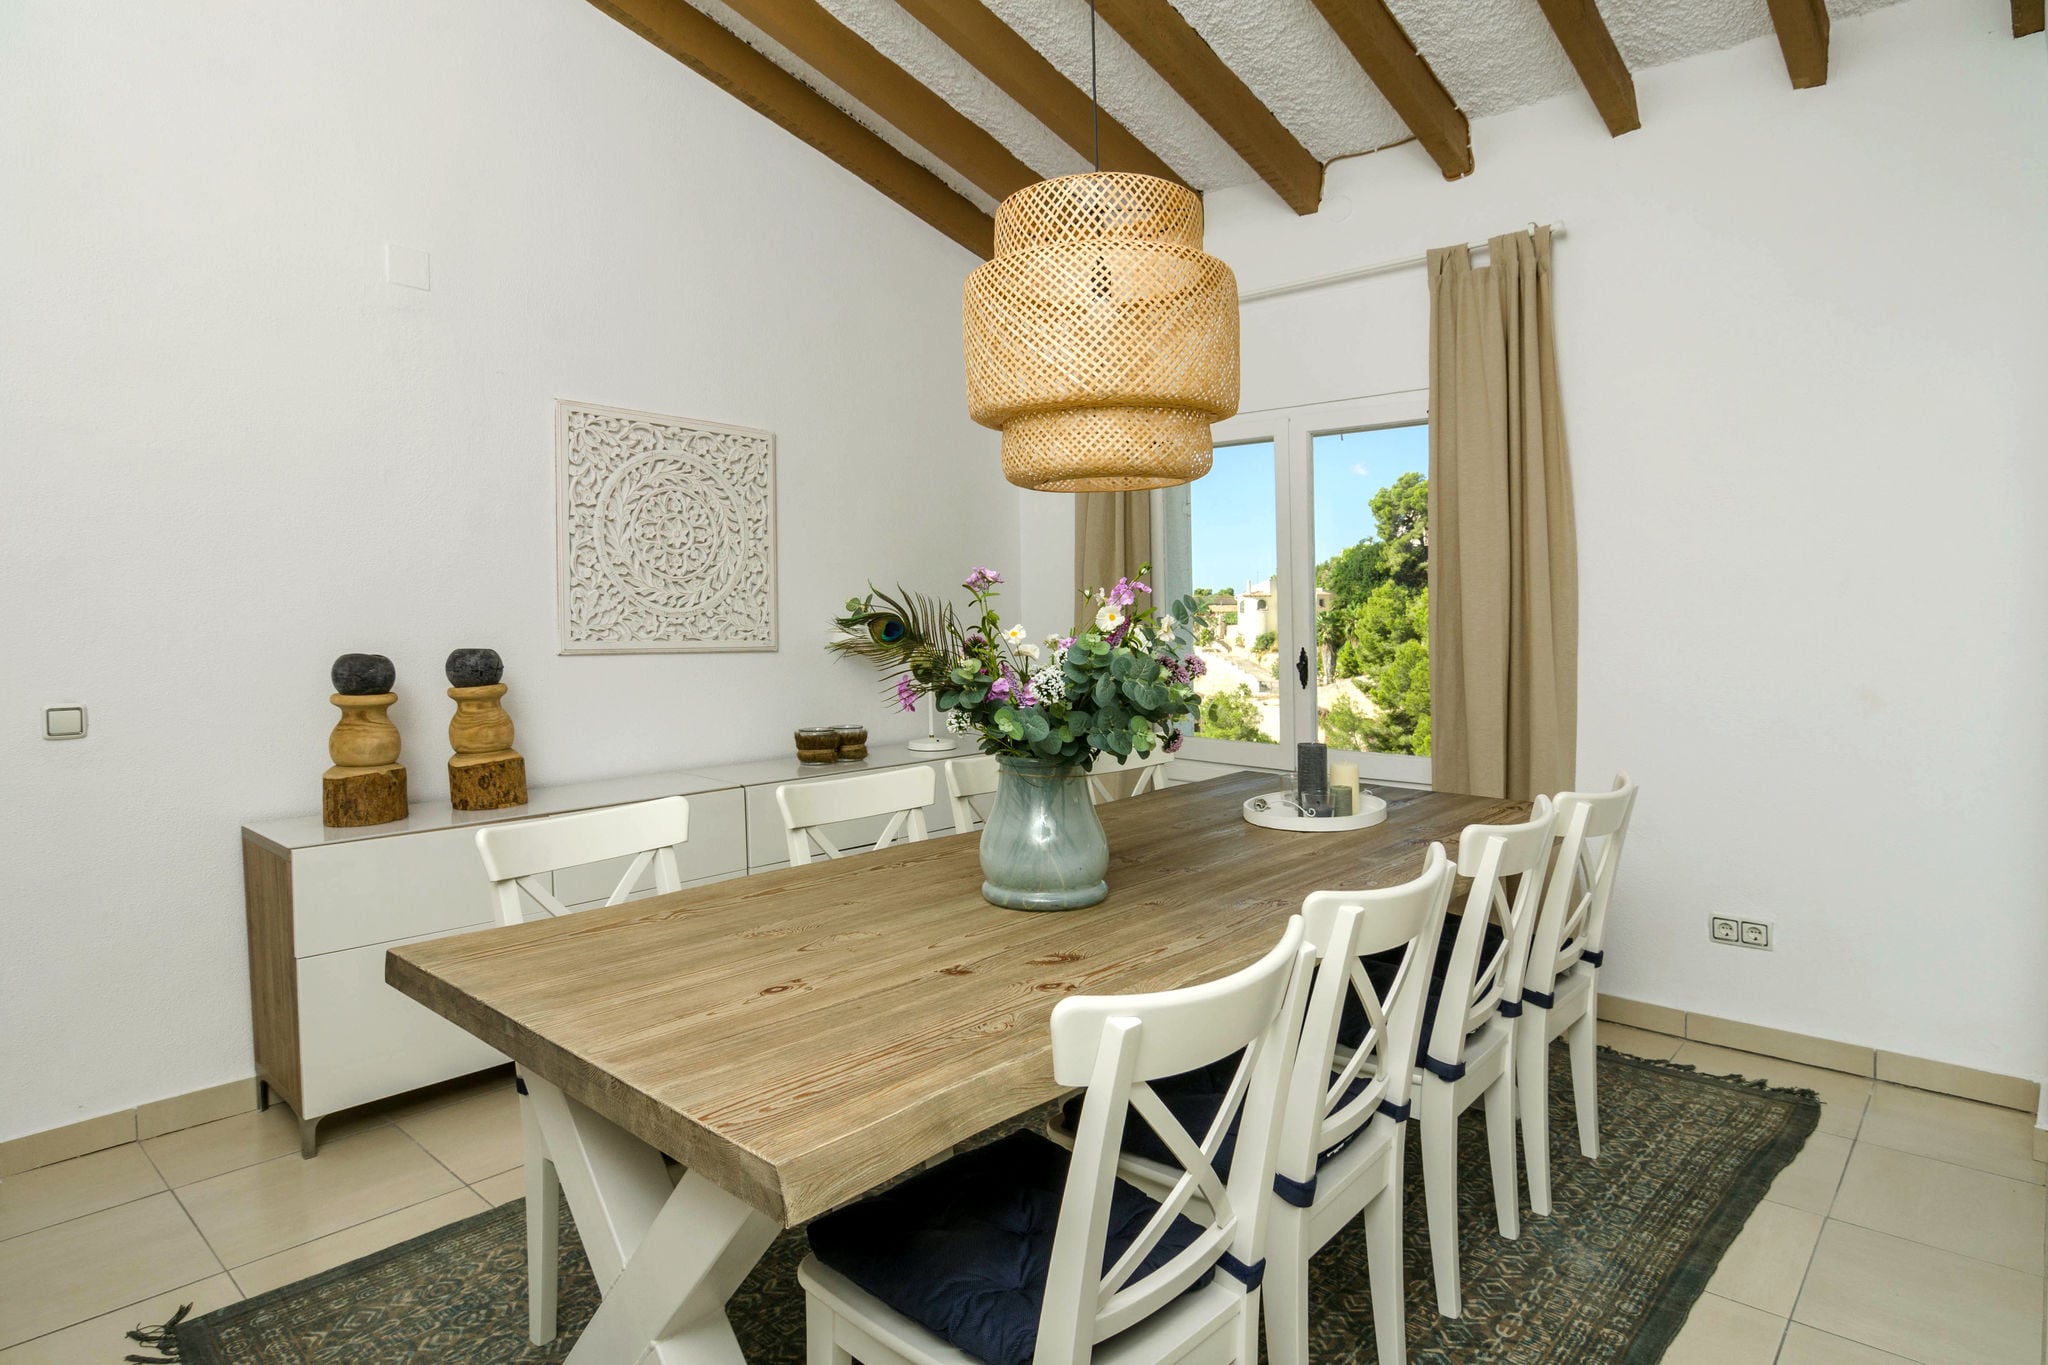 Villa im Ibiza-Stil in Moraira mit privatem Pool und herrlichem Blick